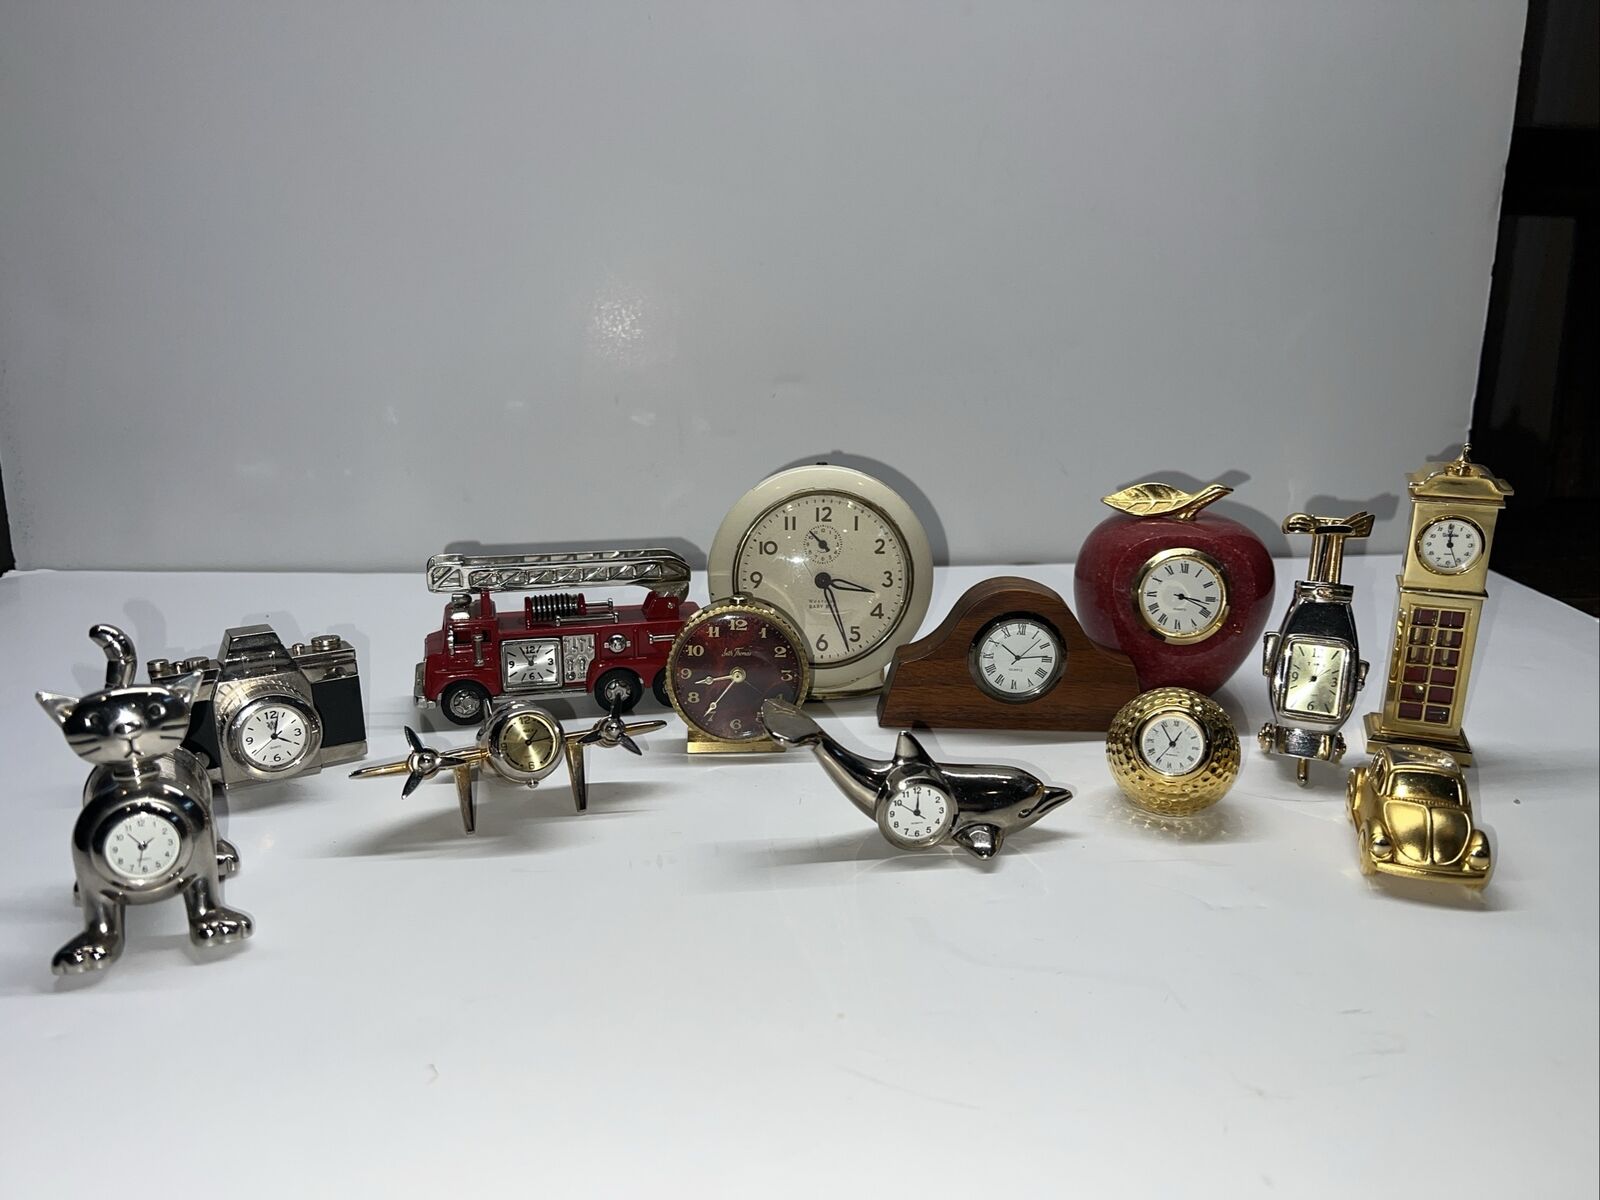 Lot Of 13 Miniature Clocks - used - Untested